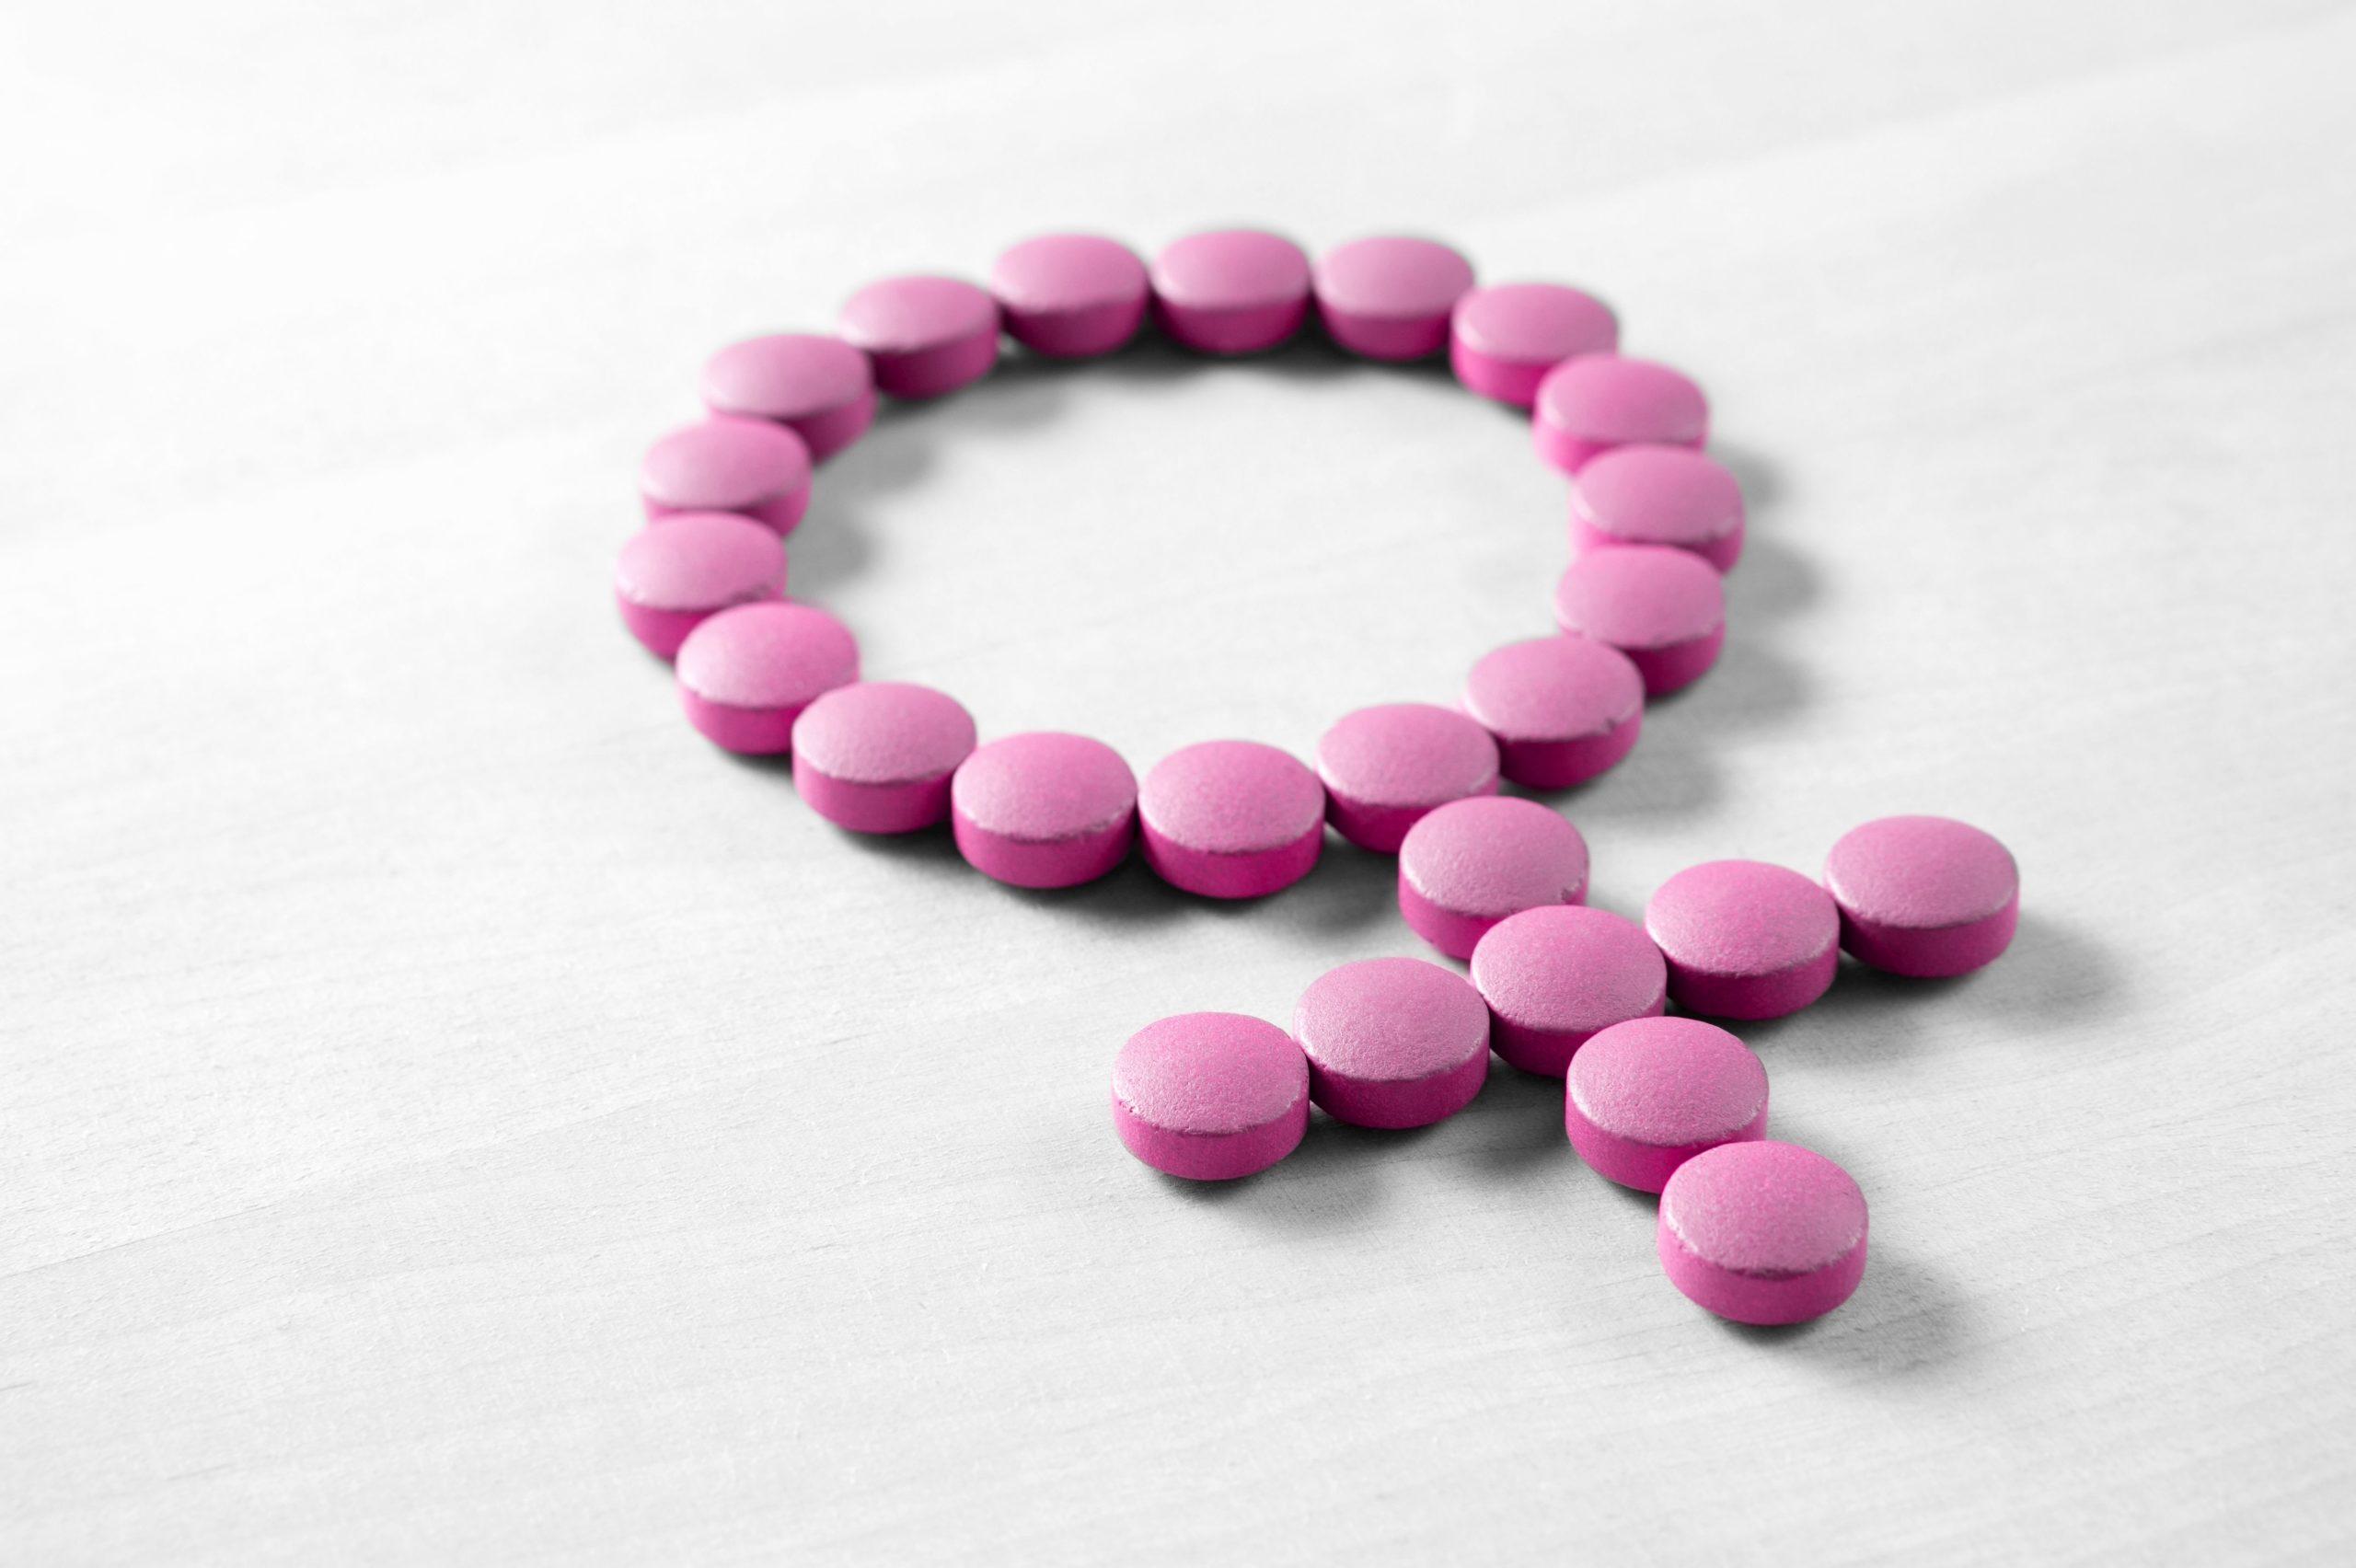 Weibliche Gesundheit. Geschlechtssymbol aus rosaroten Pillen oder Tabletten auf Holztisch